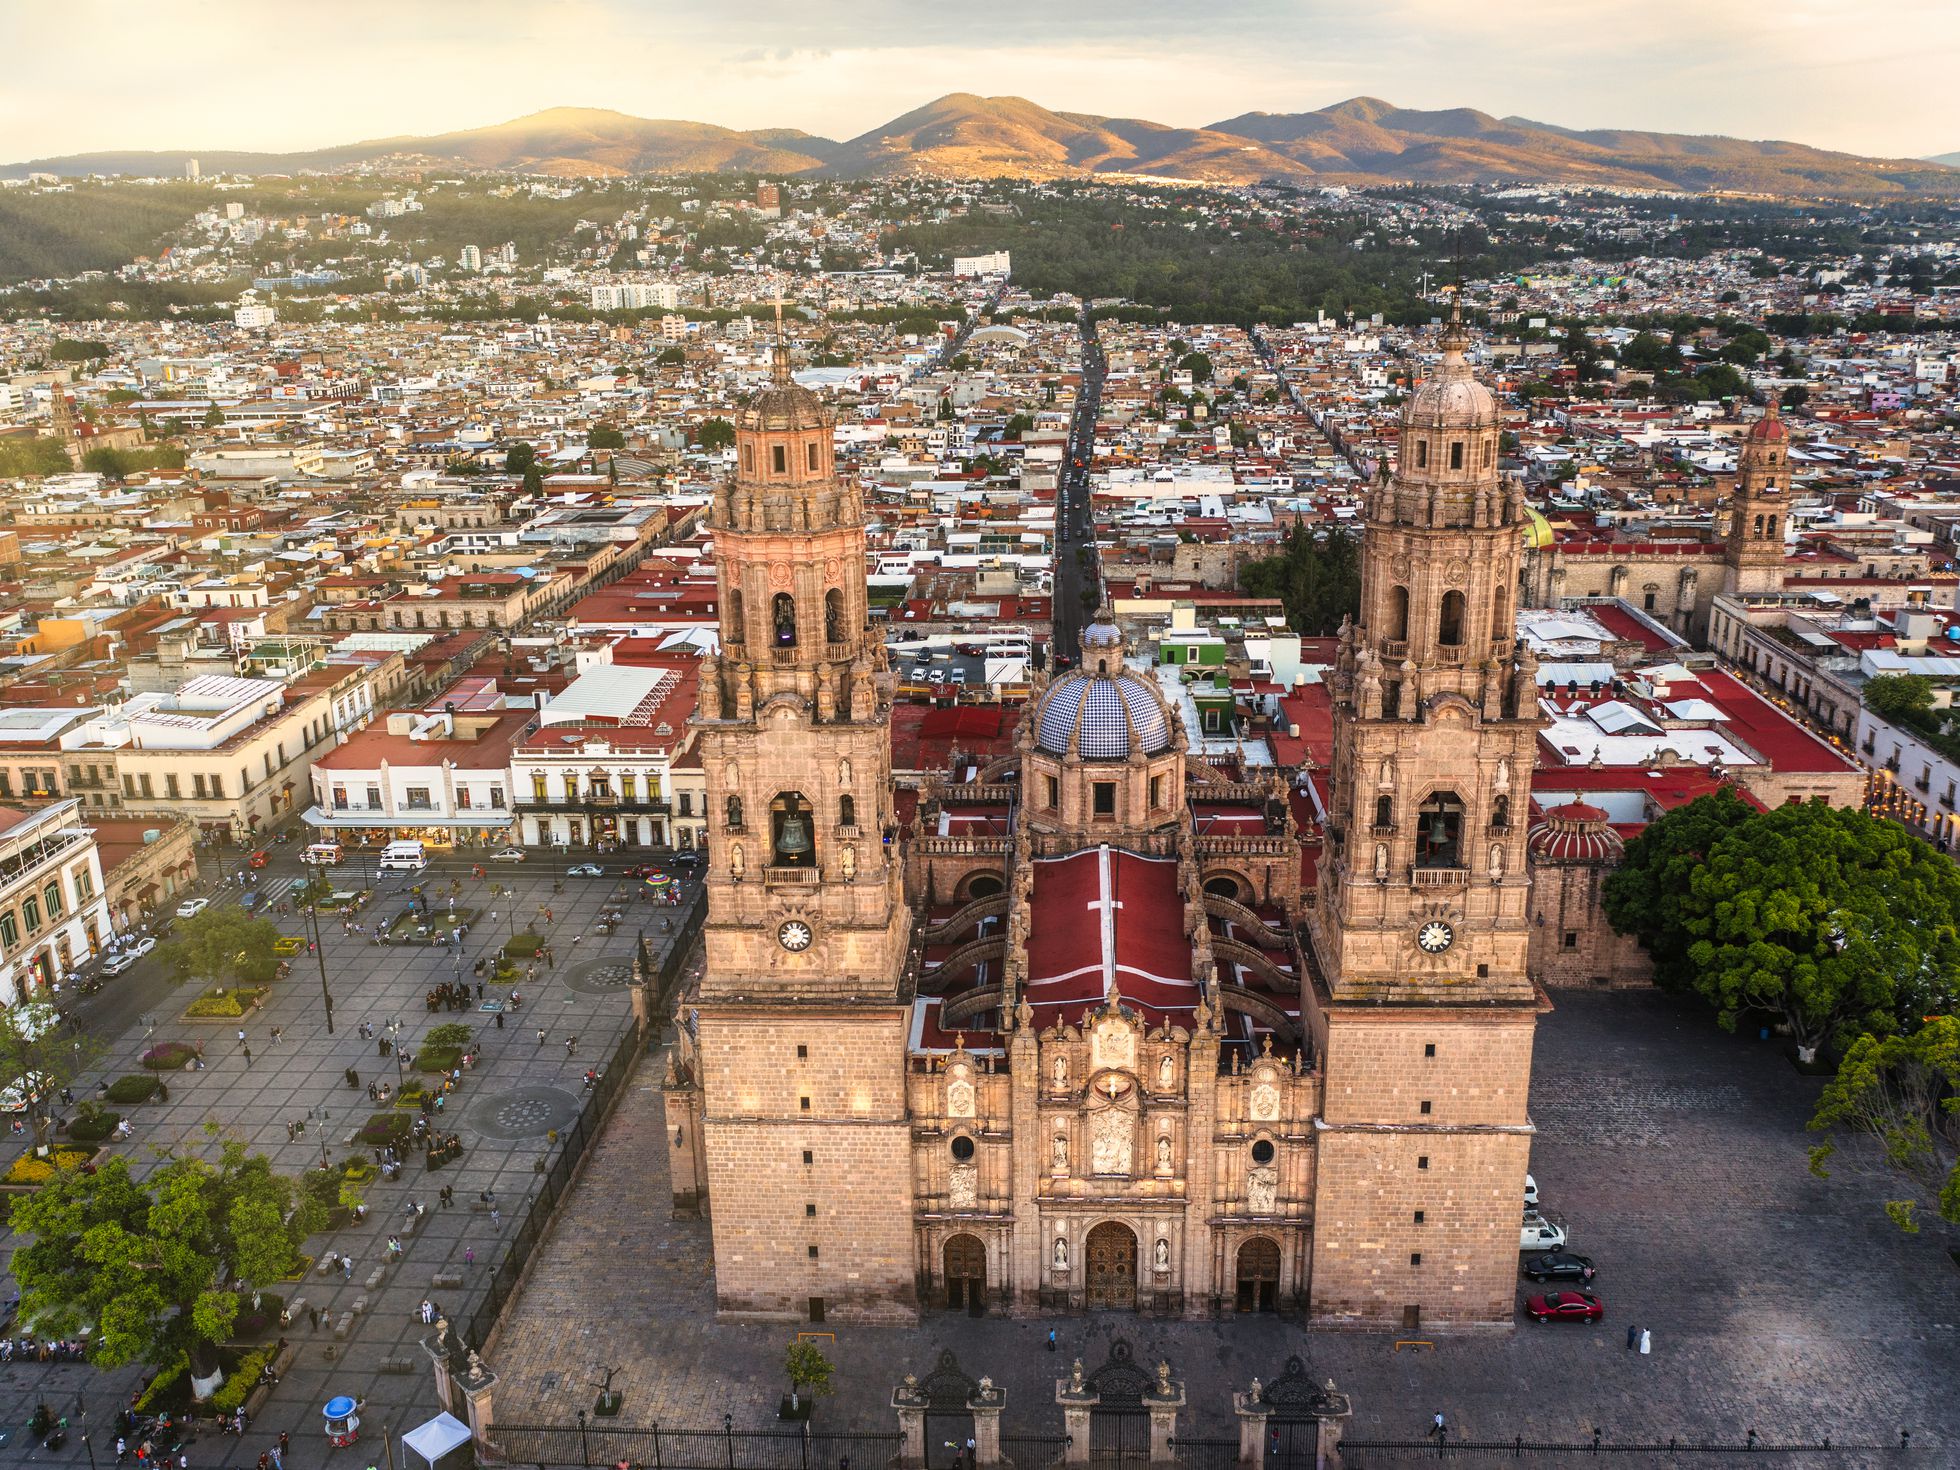 Explora el Auditorio Municipal de Guadalupe: Un Espacio Cultural Impresionante